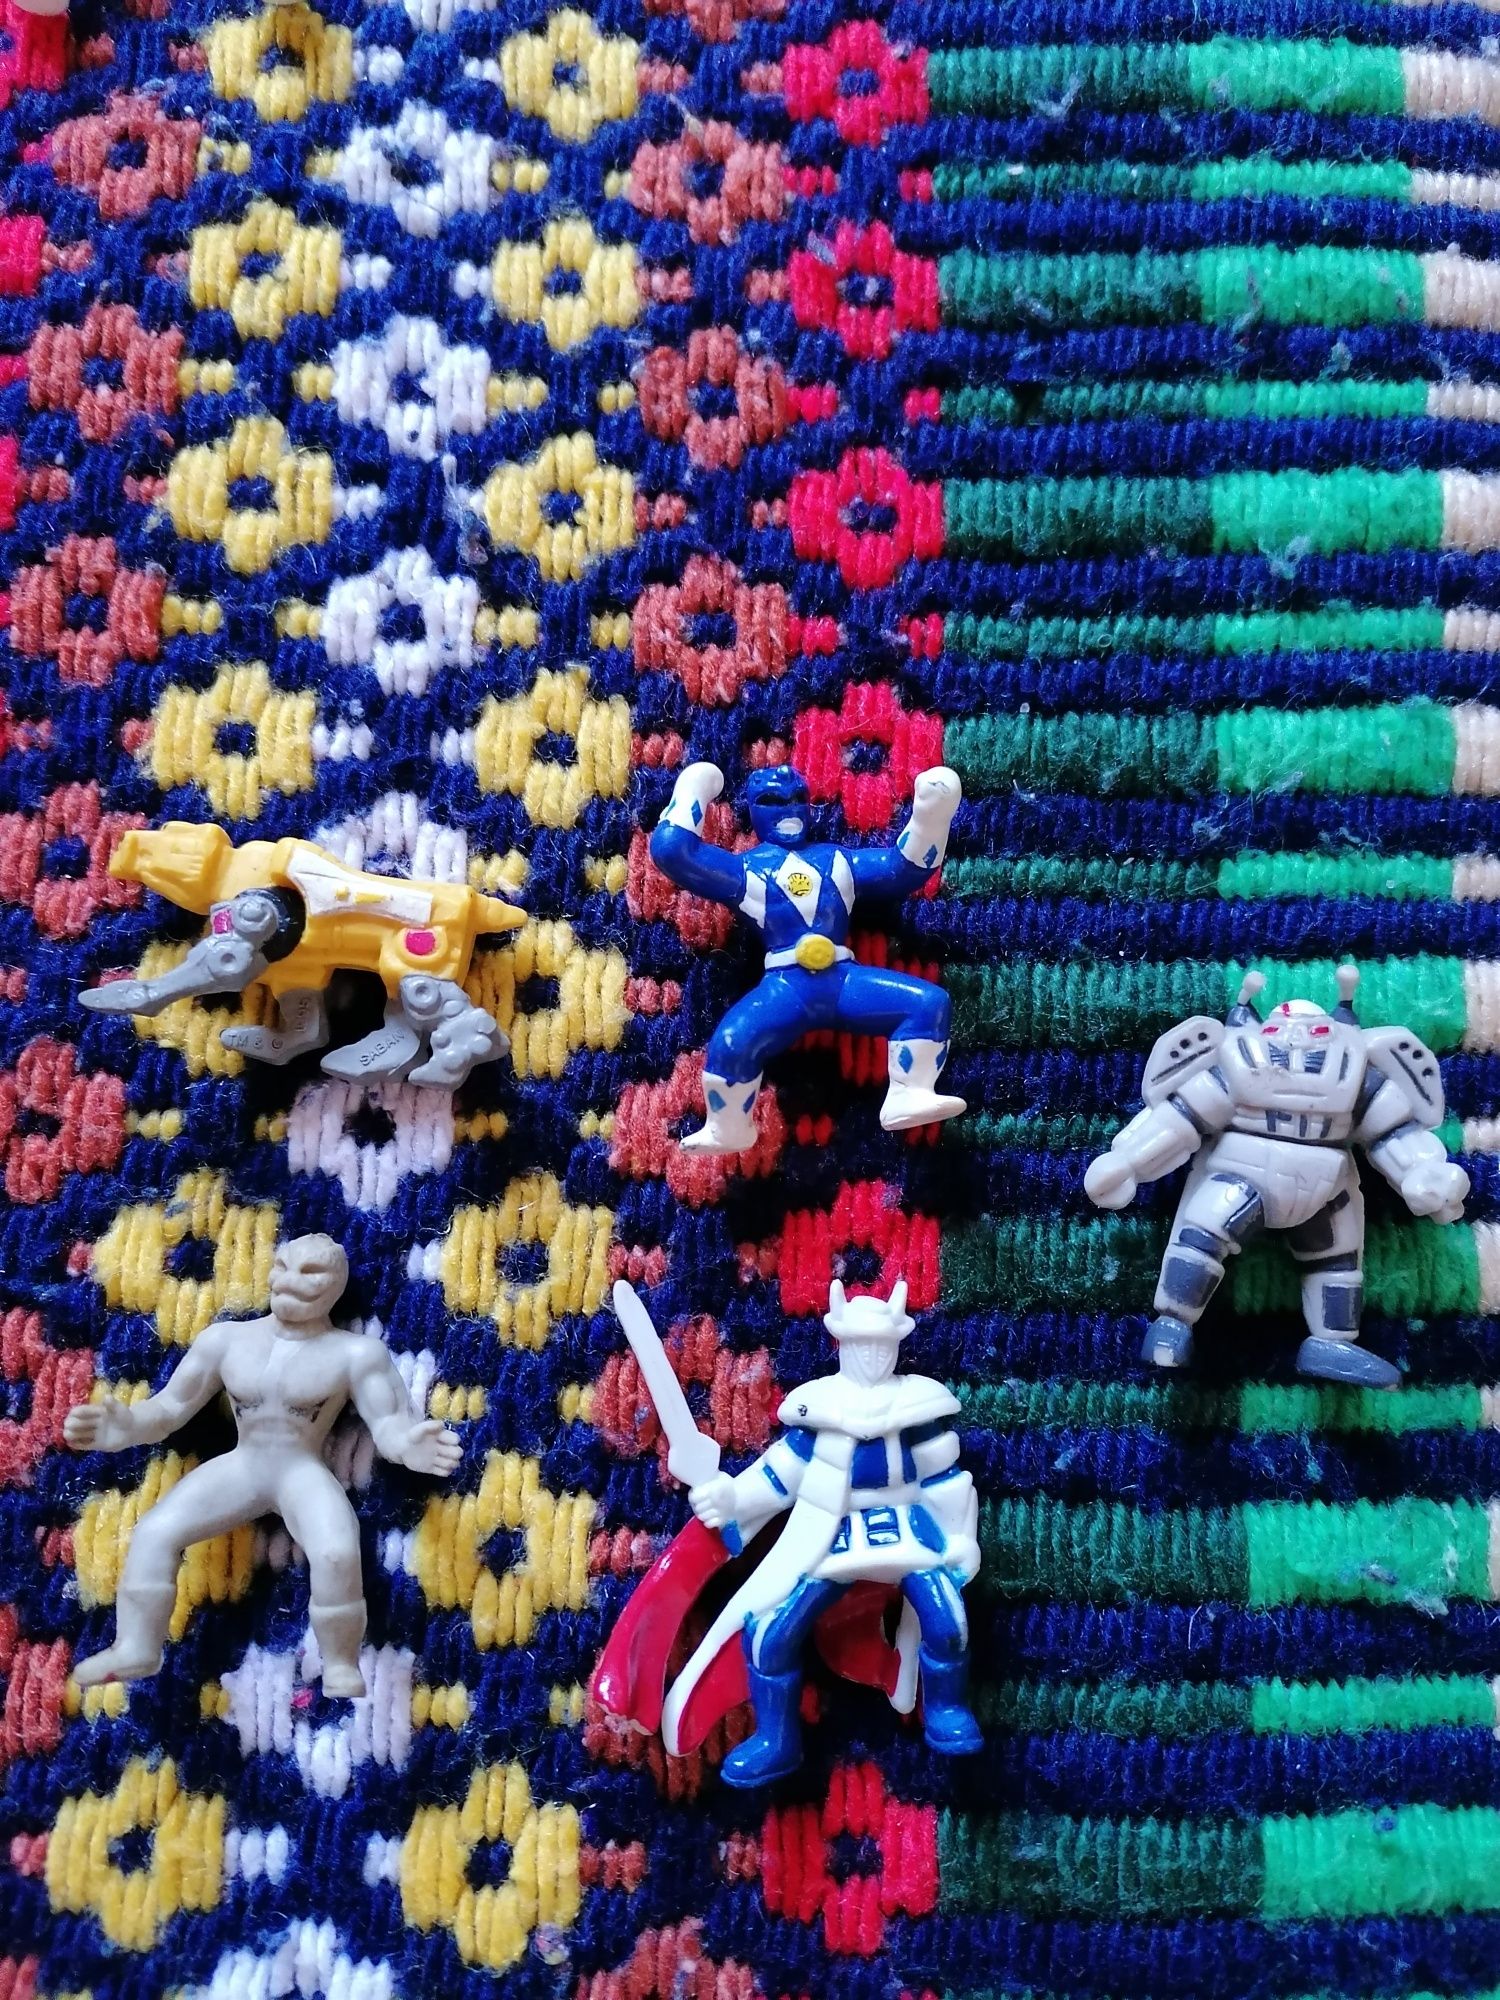 Bonecos Power Rangers (antigos)